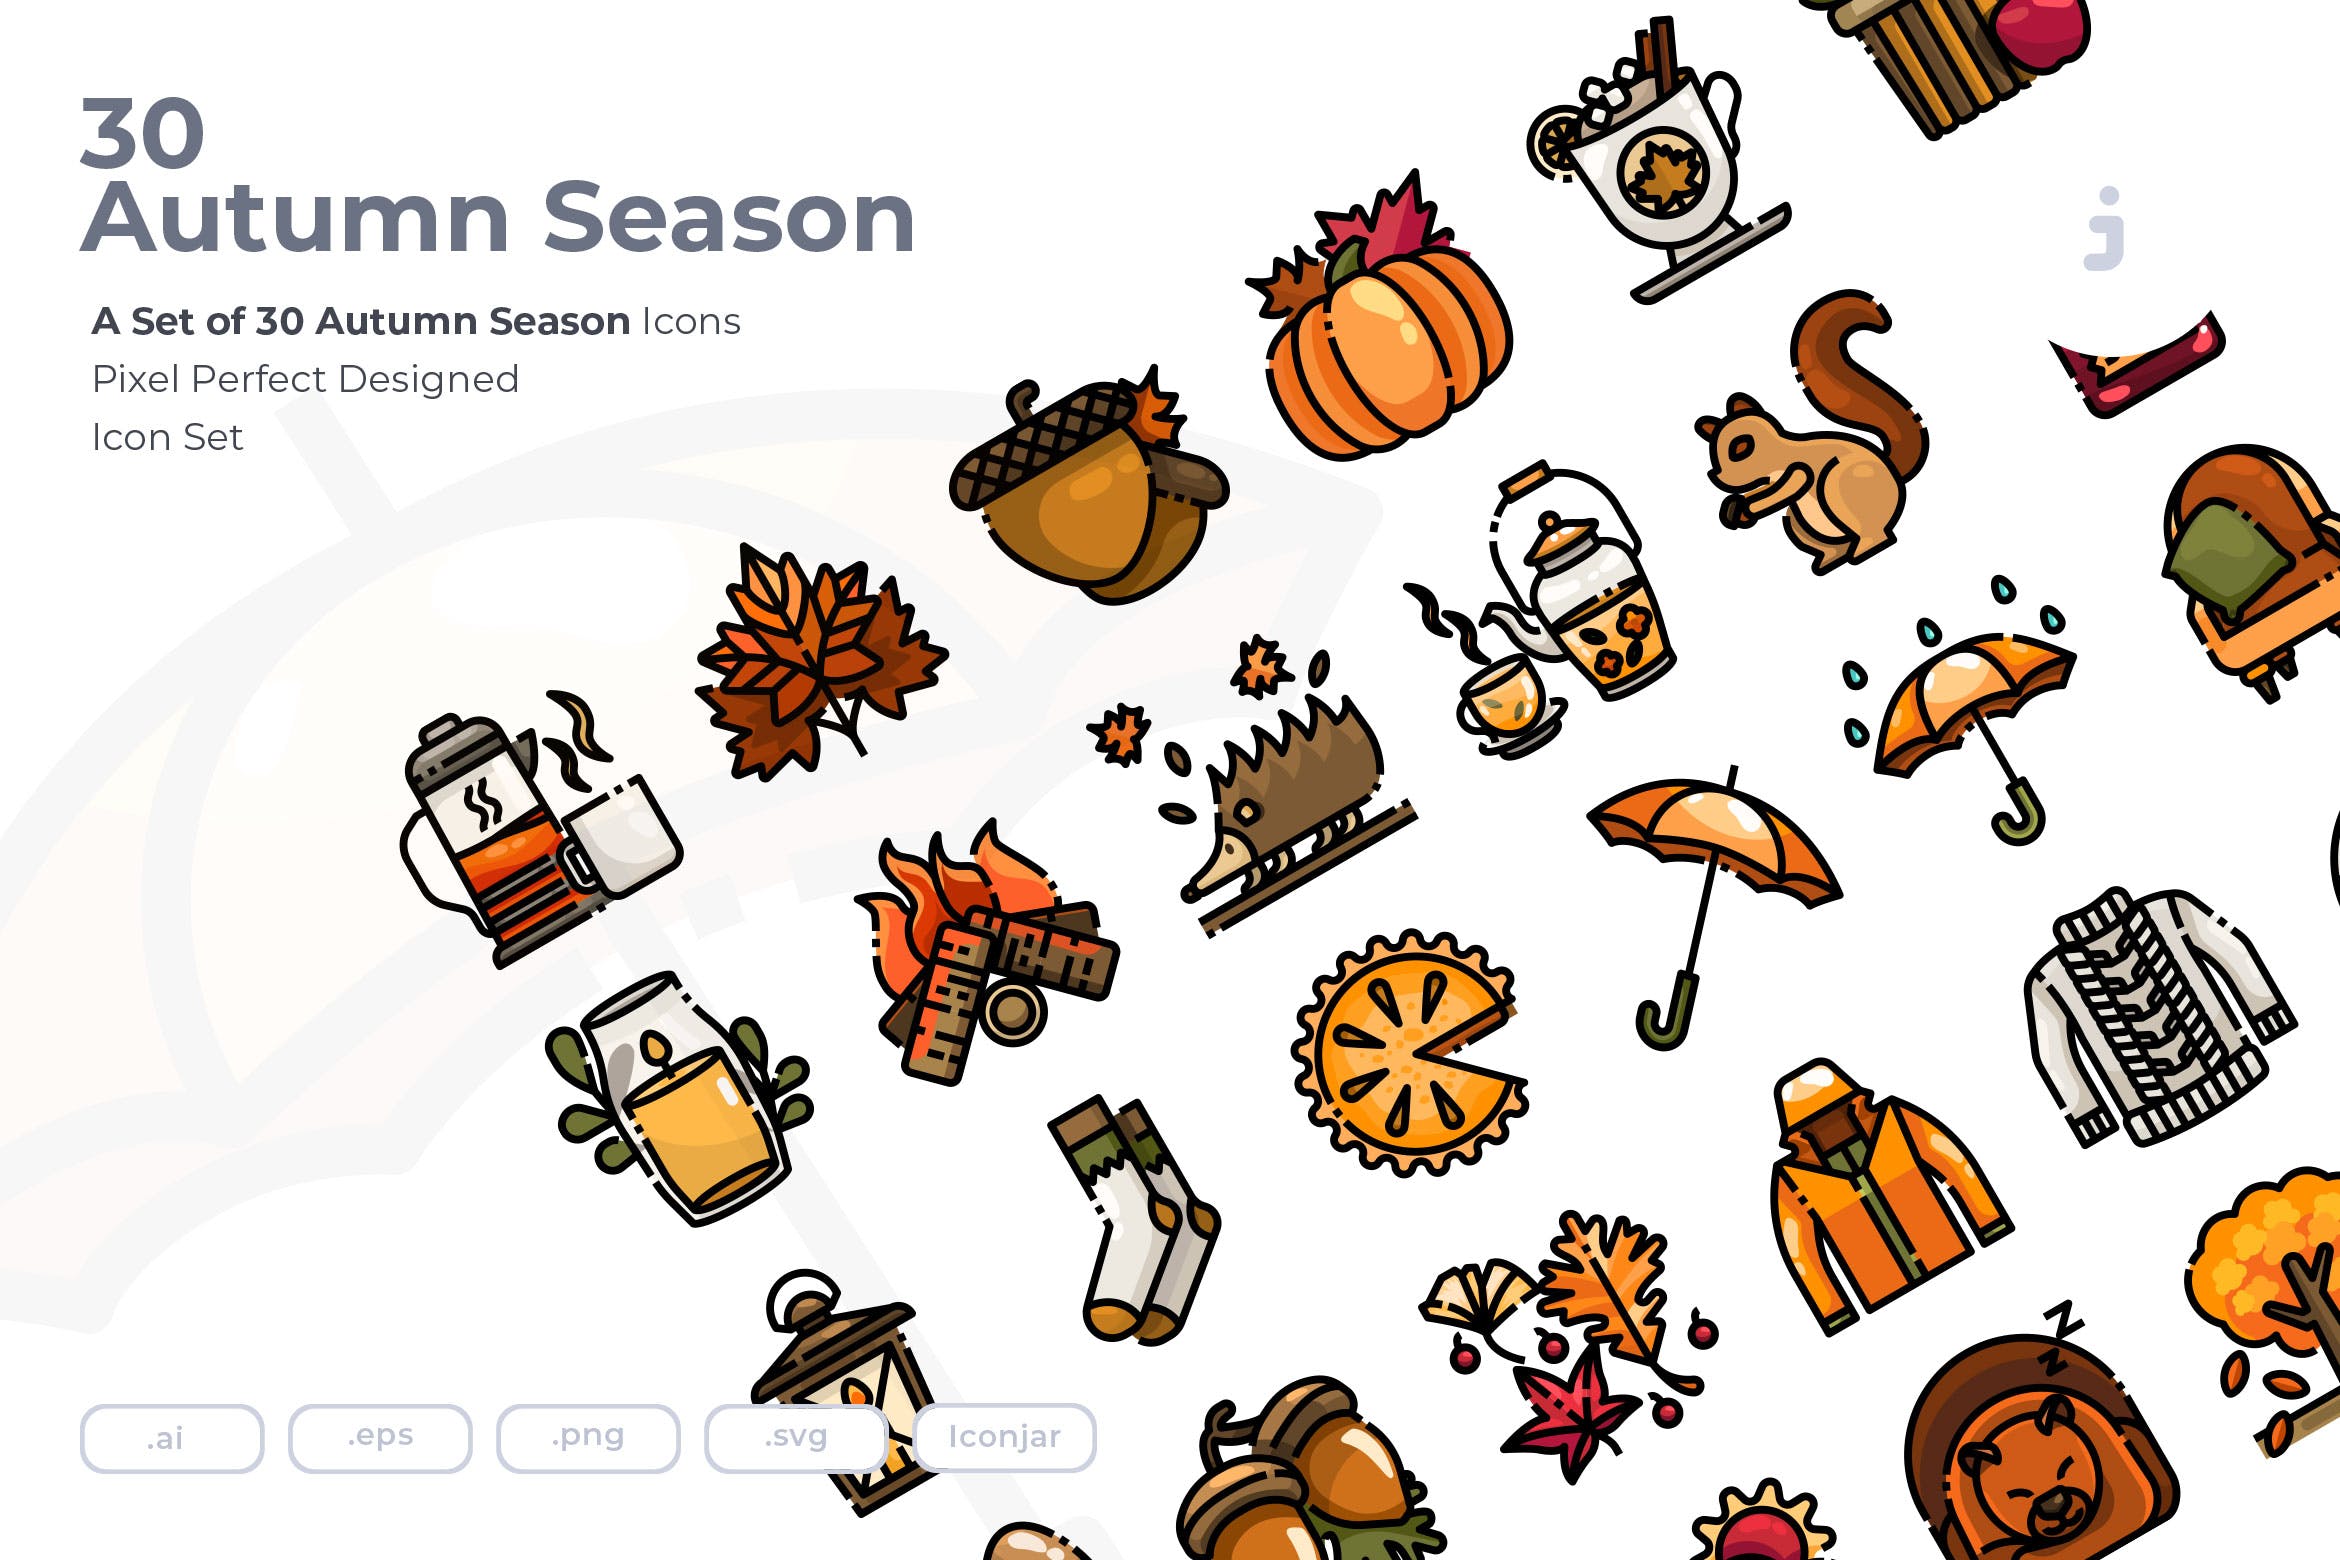  30个秋季元素图标源文件下载30 Autumn Season Icons Hdkzfw4